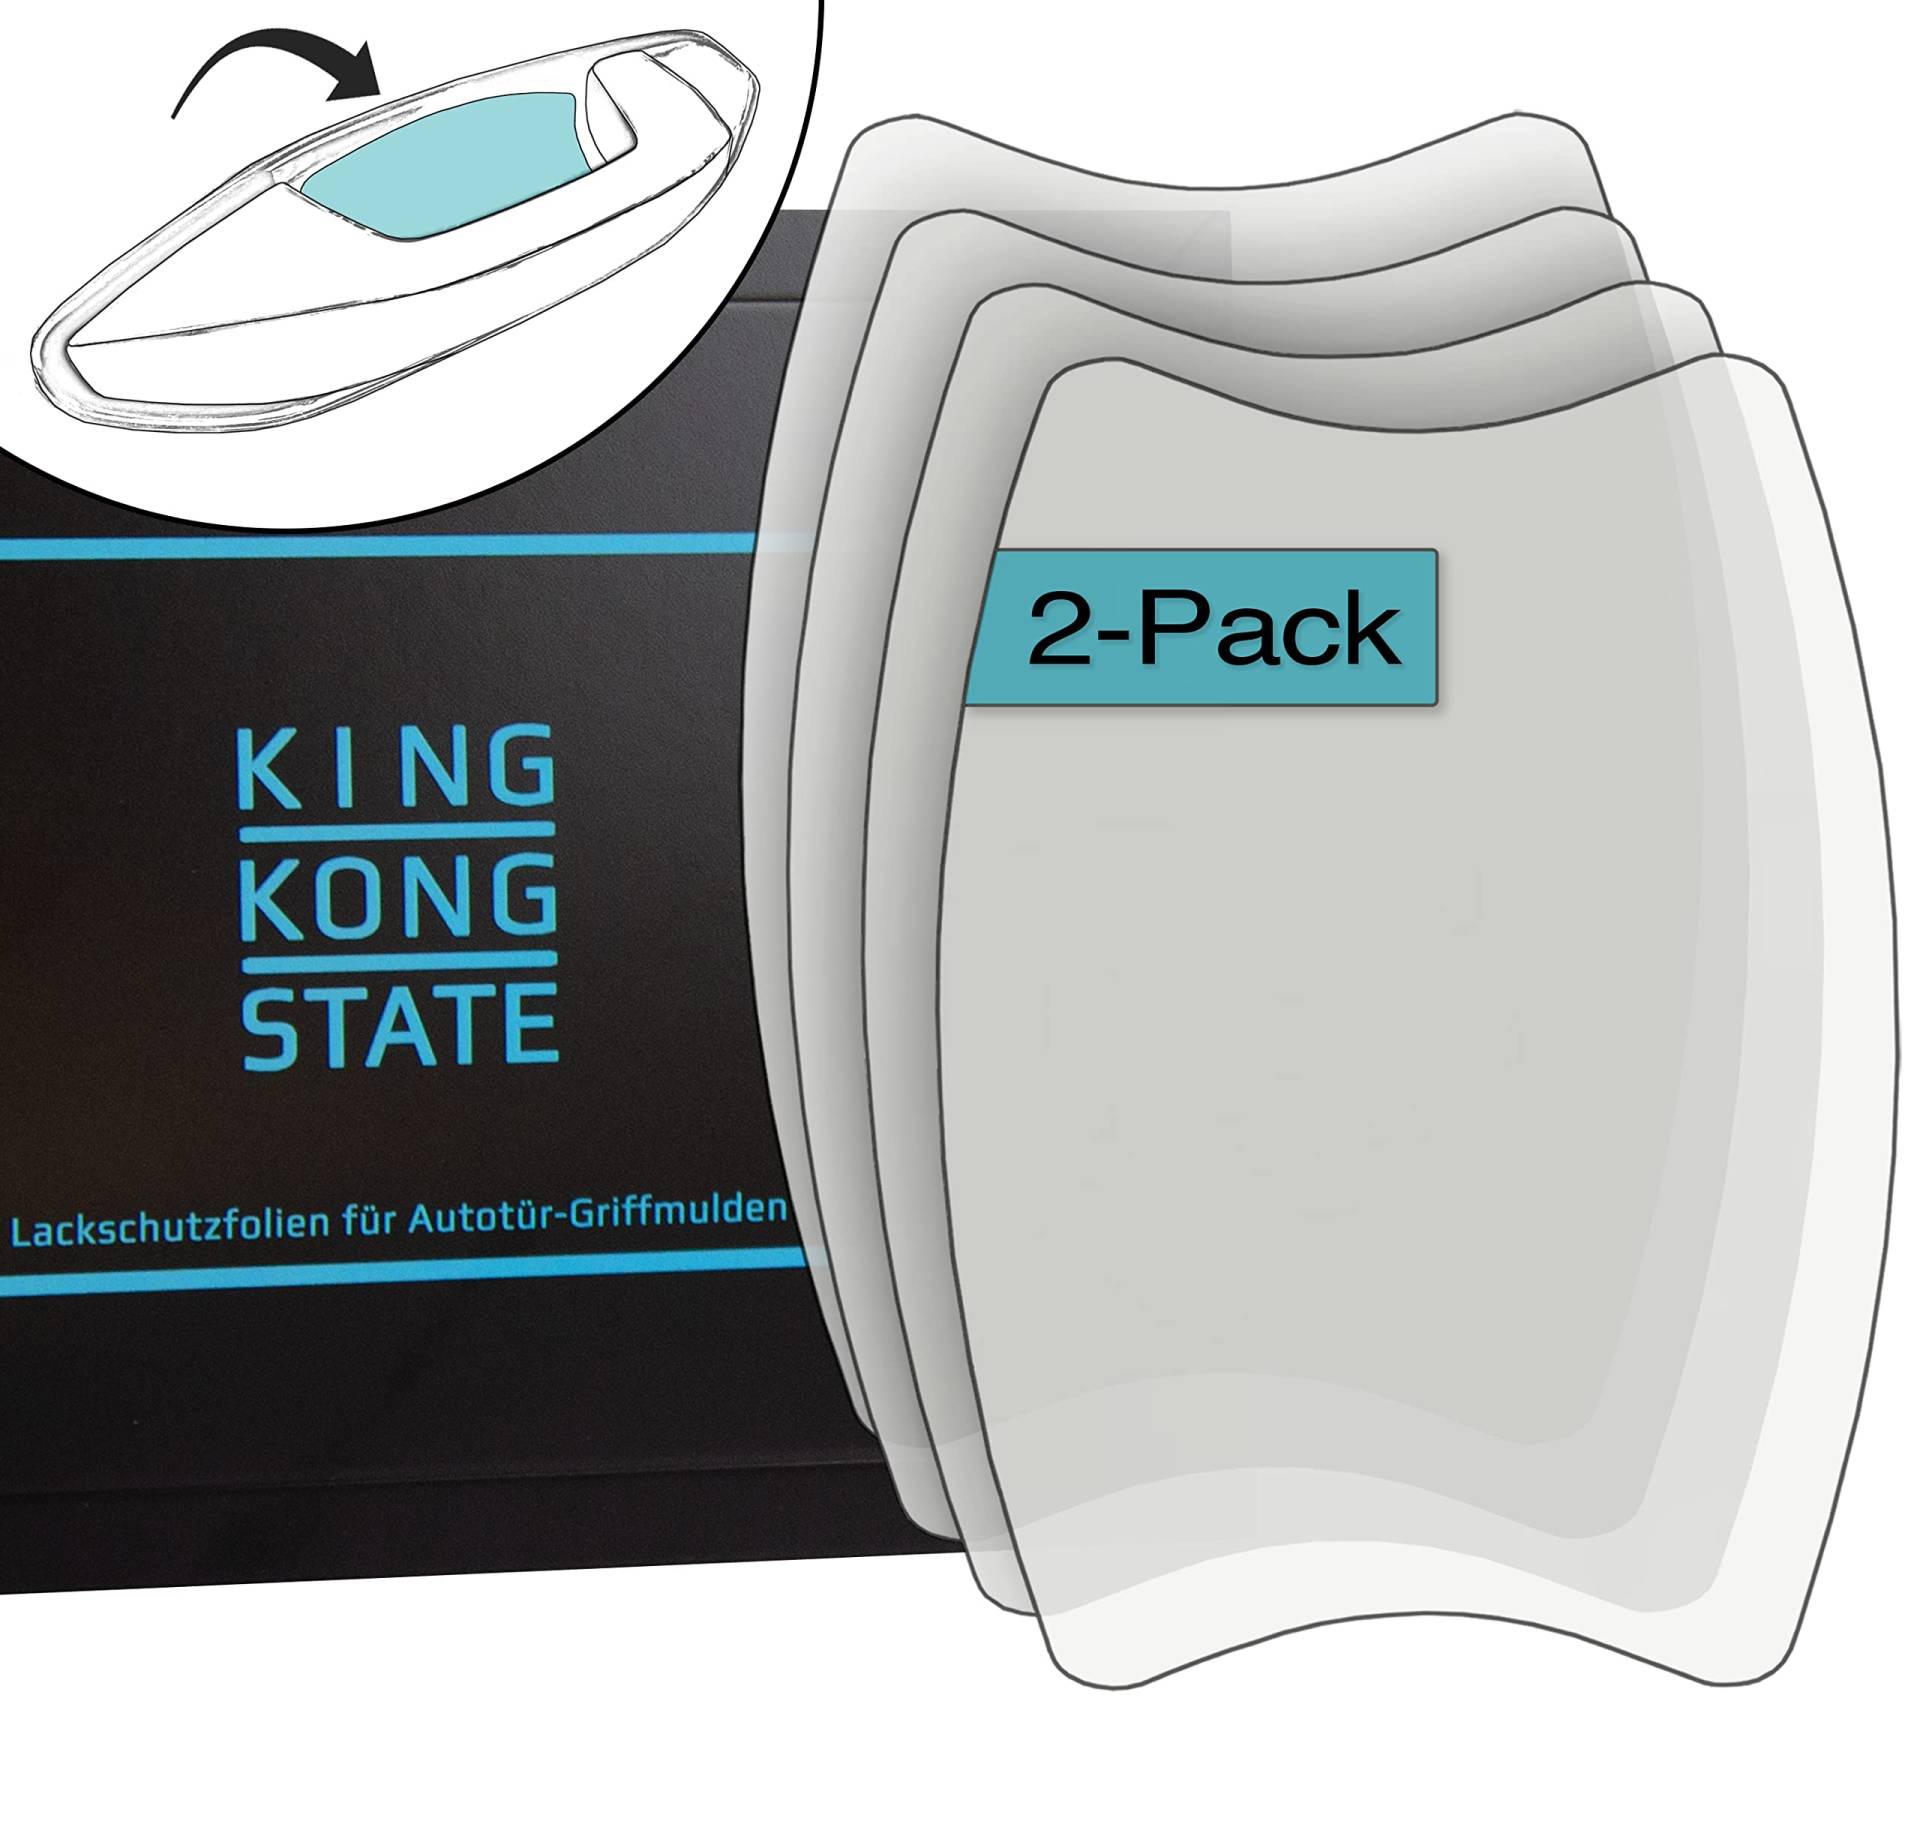 King Kong State Lackschutzfolien 2er-Set für Autotür-Griffmulden - große Griffschalen-Schutzfolien zum Schutz vor Kratzern - transparent von King Kong State